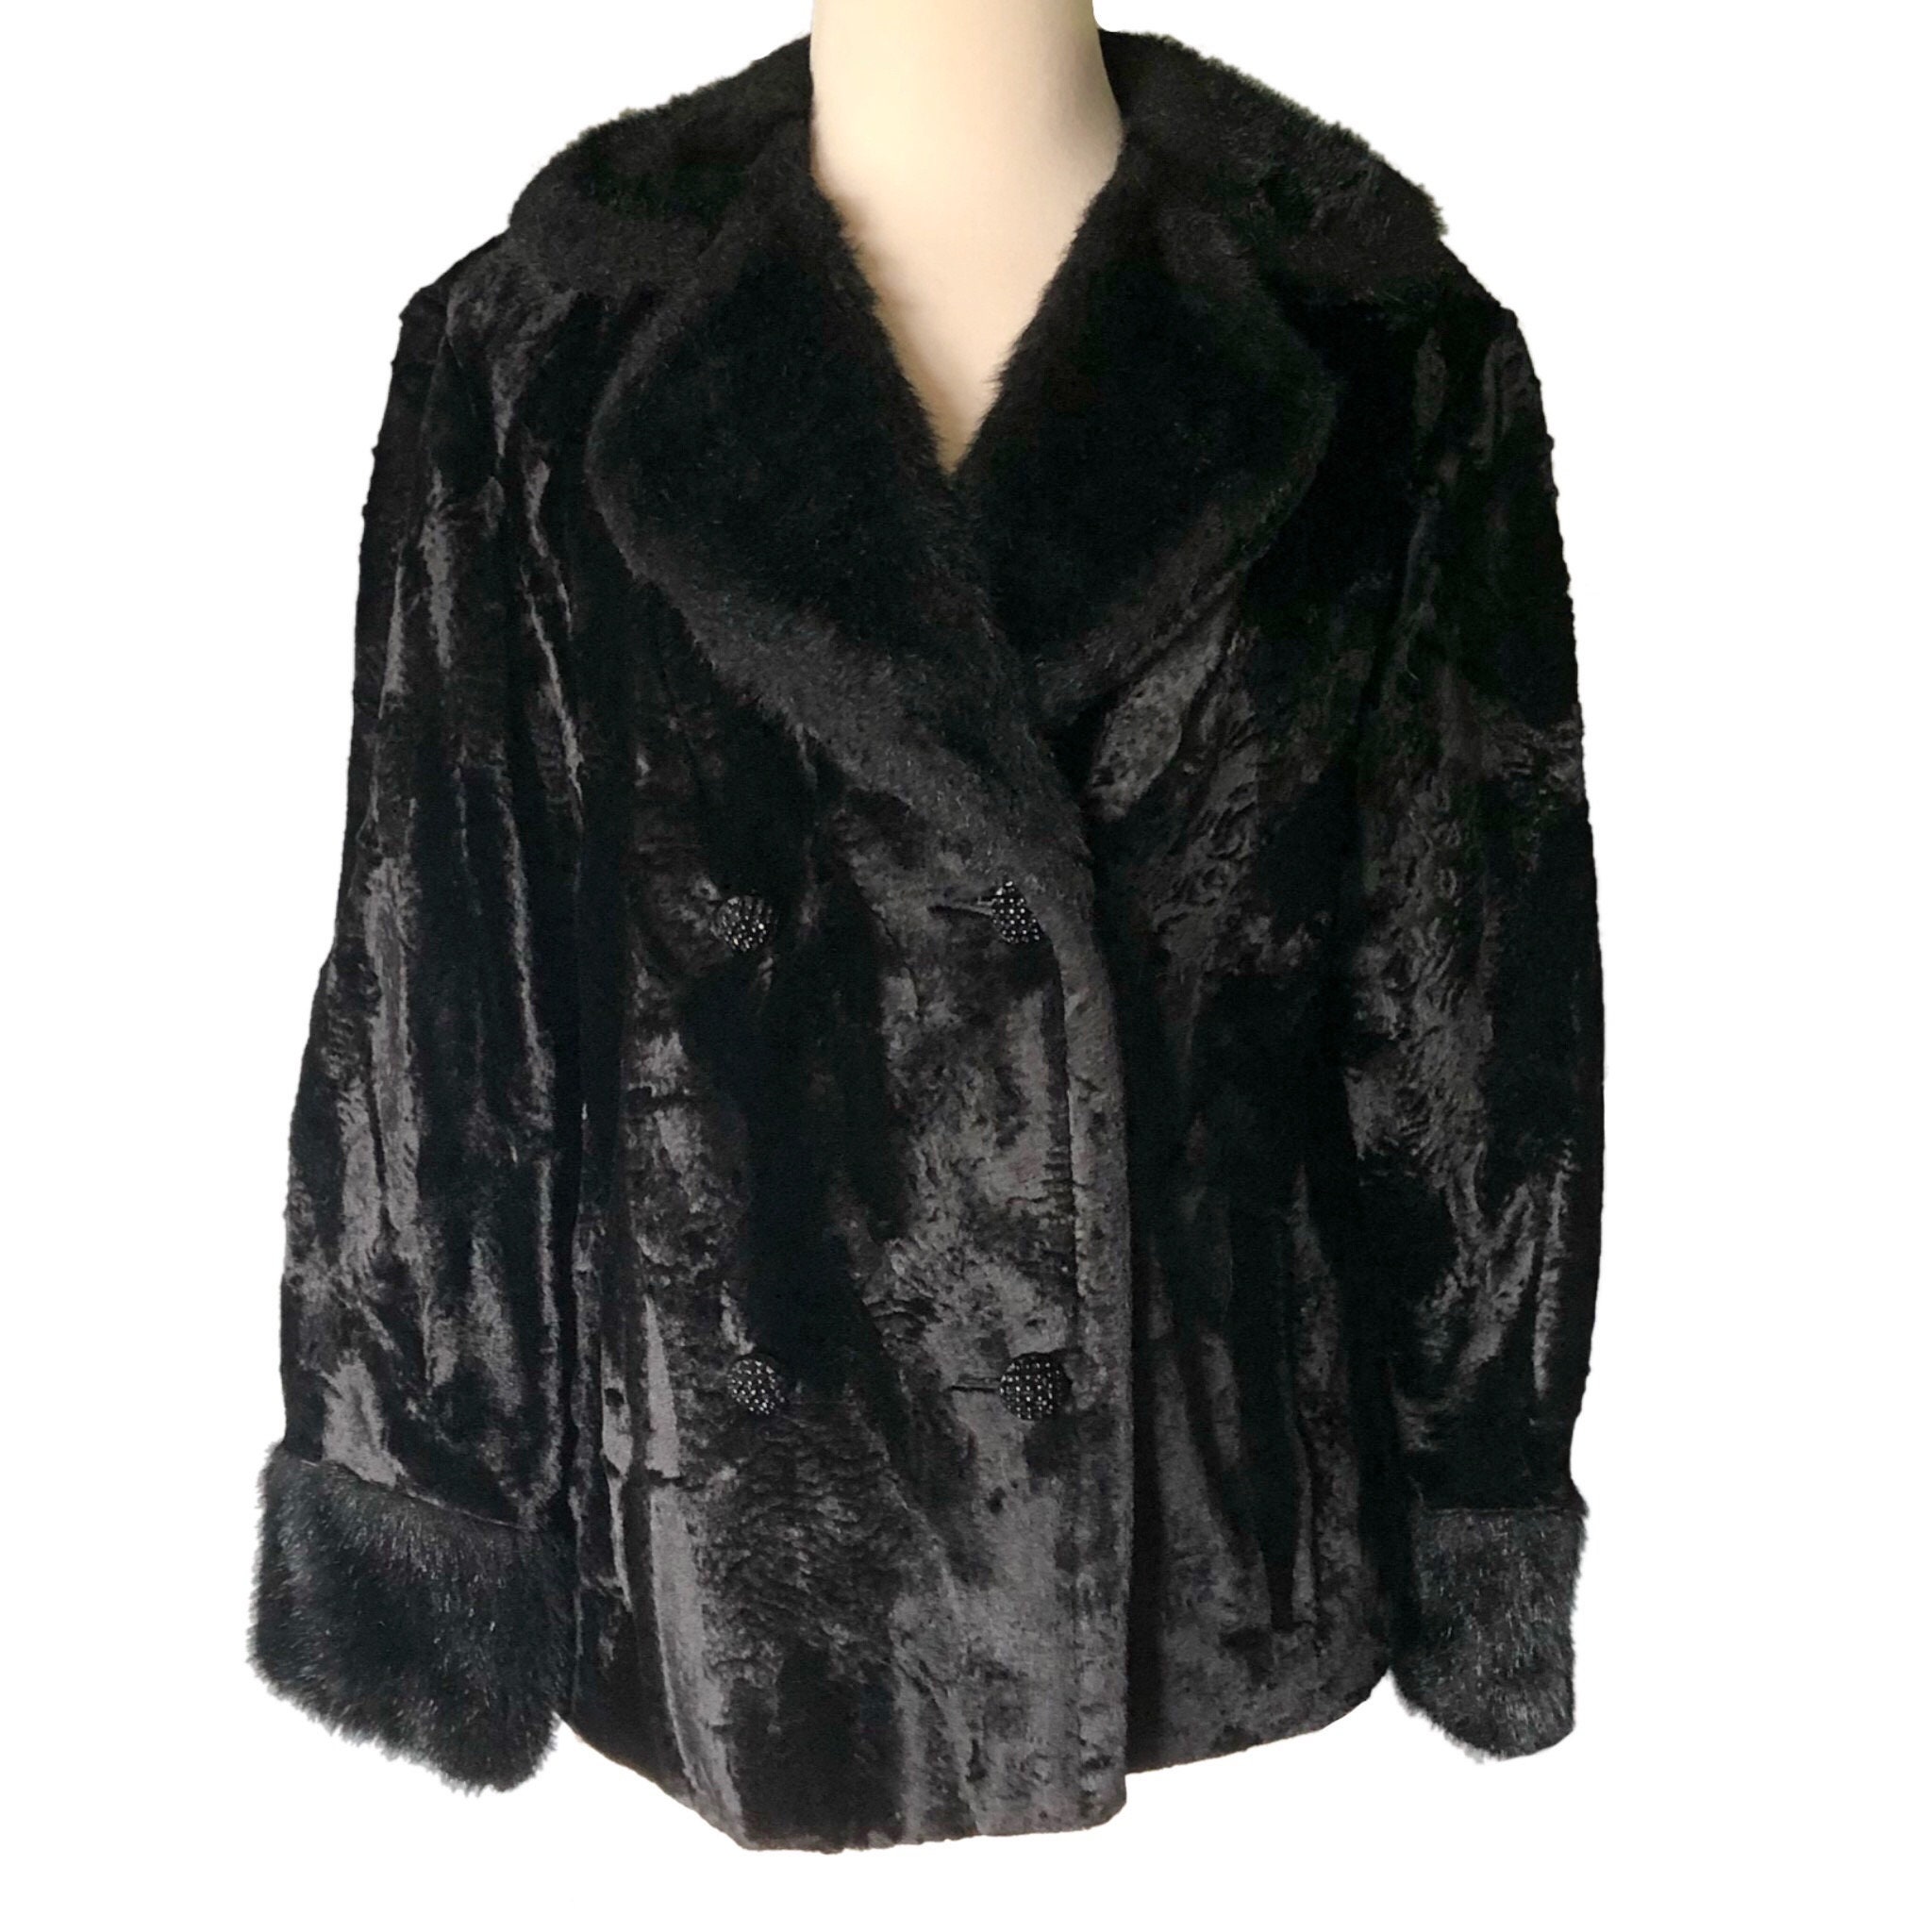 Vintage Black Fur Coat Black Faceted Buttons 1950's Crop | Etsy